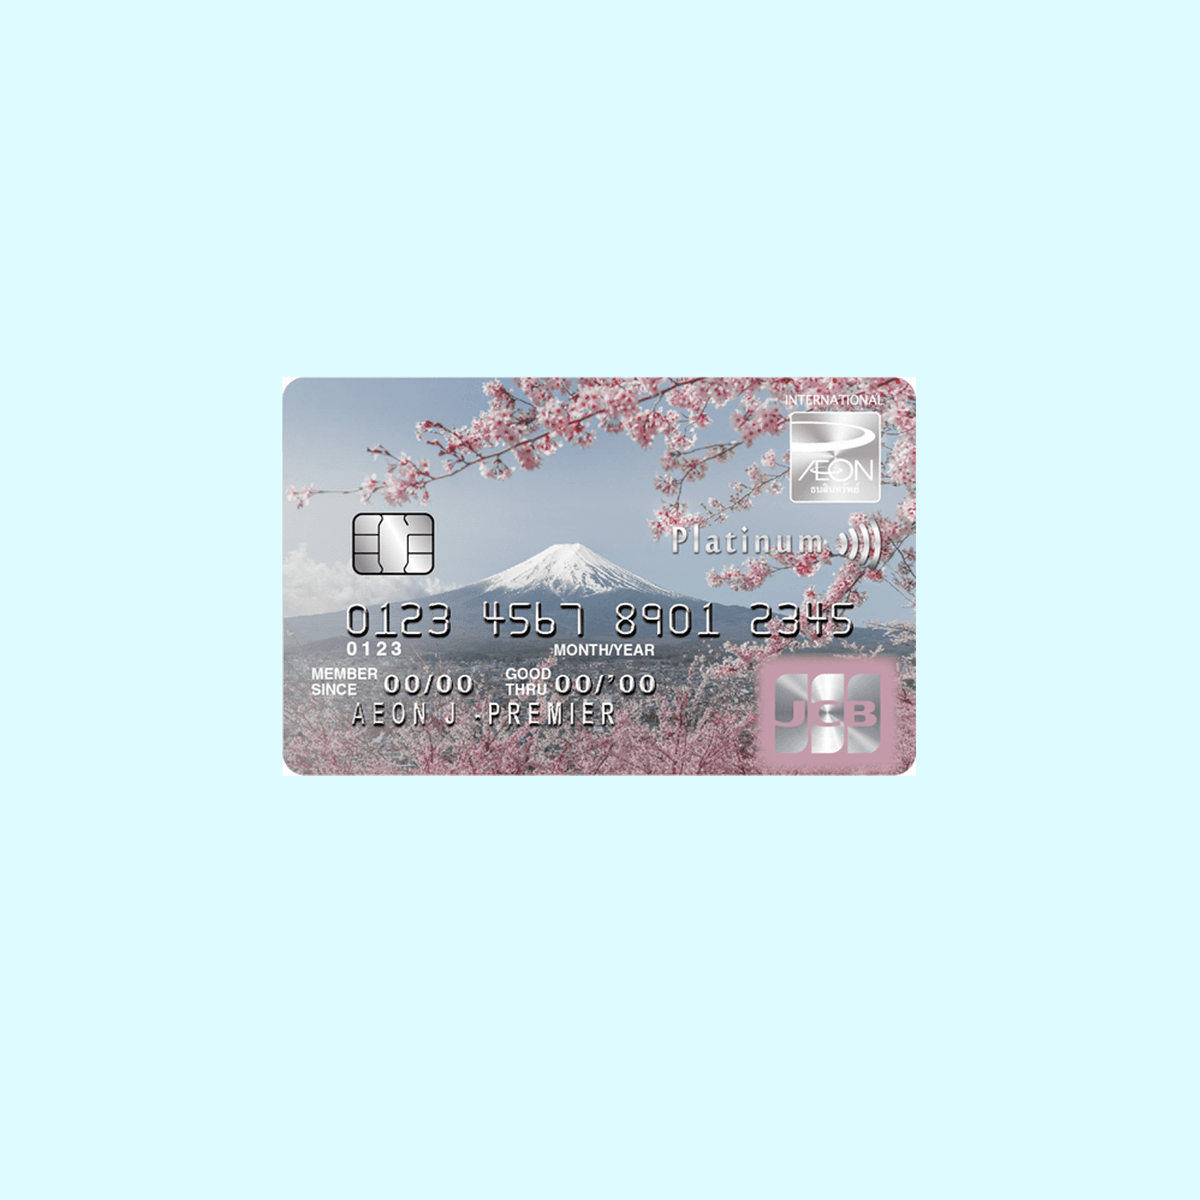 รูปภาพ:บัตรเครดิตสะสมไมล์ AEON J-Premier Platinum Card